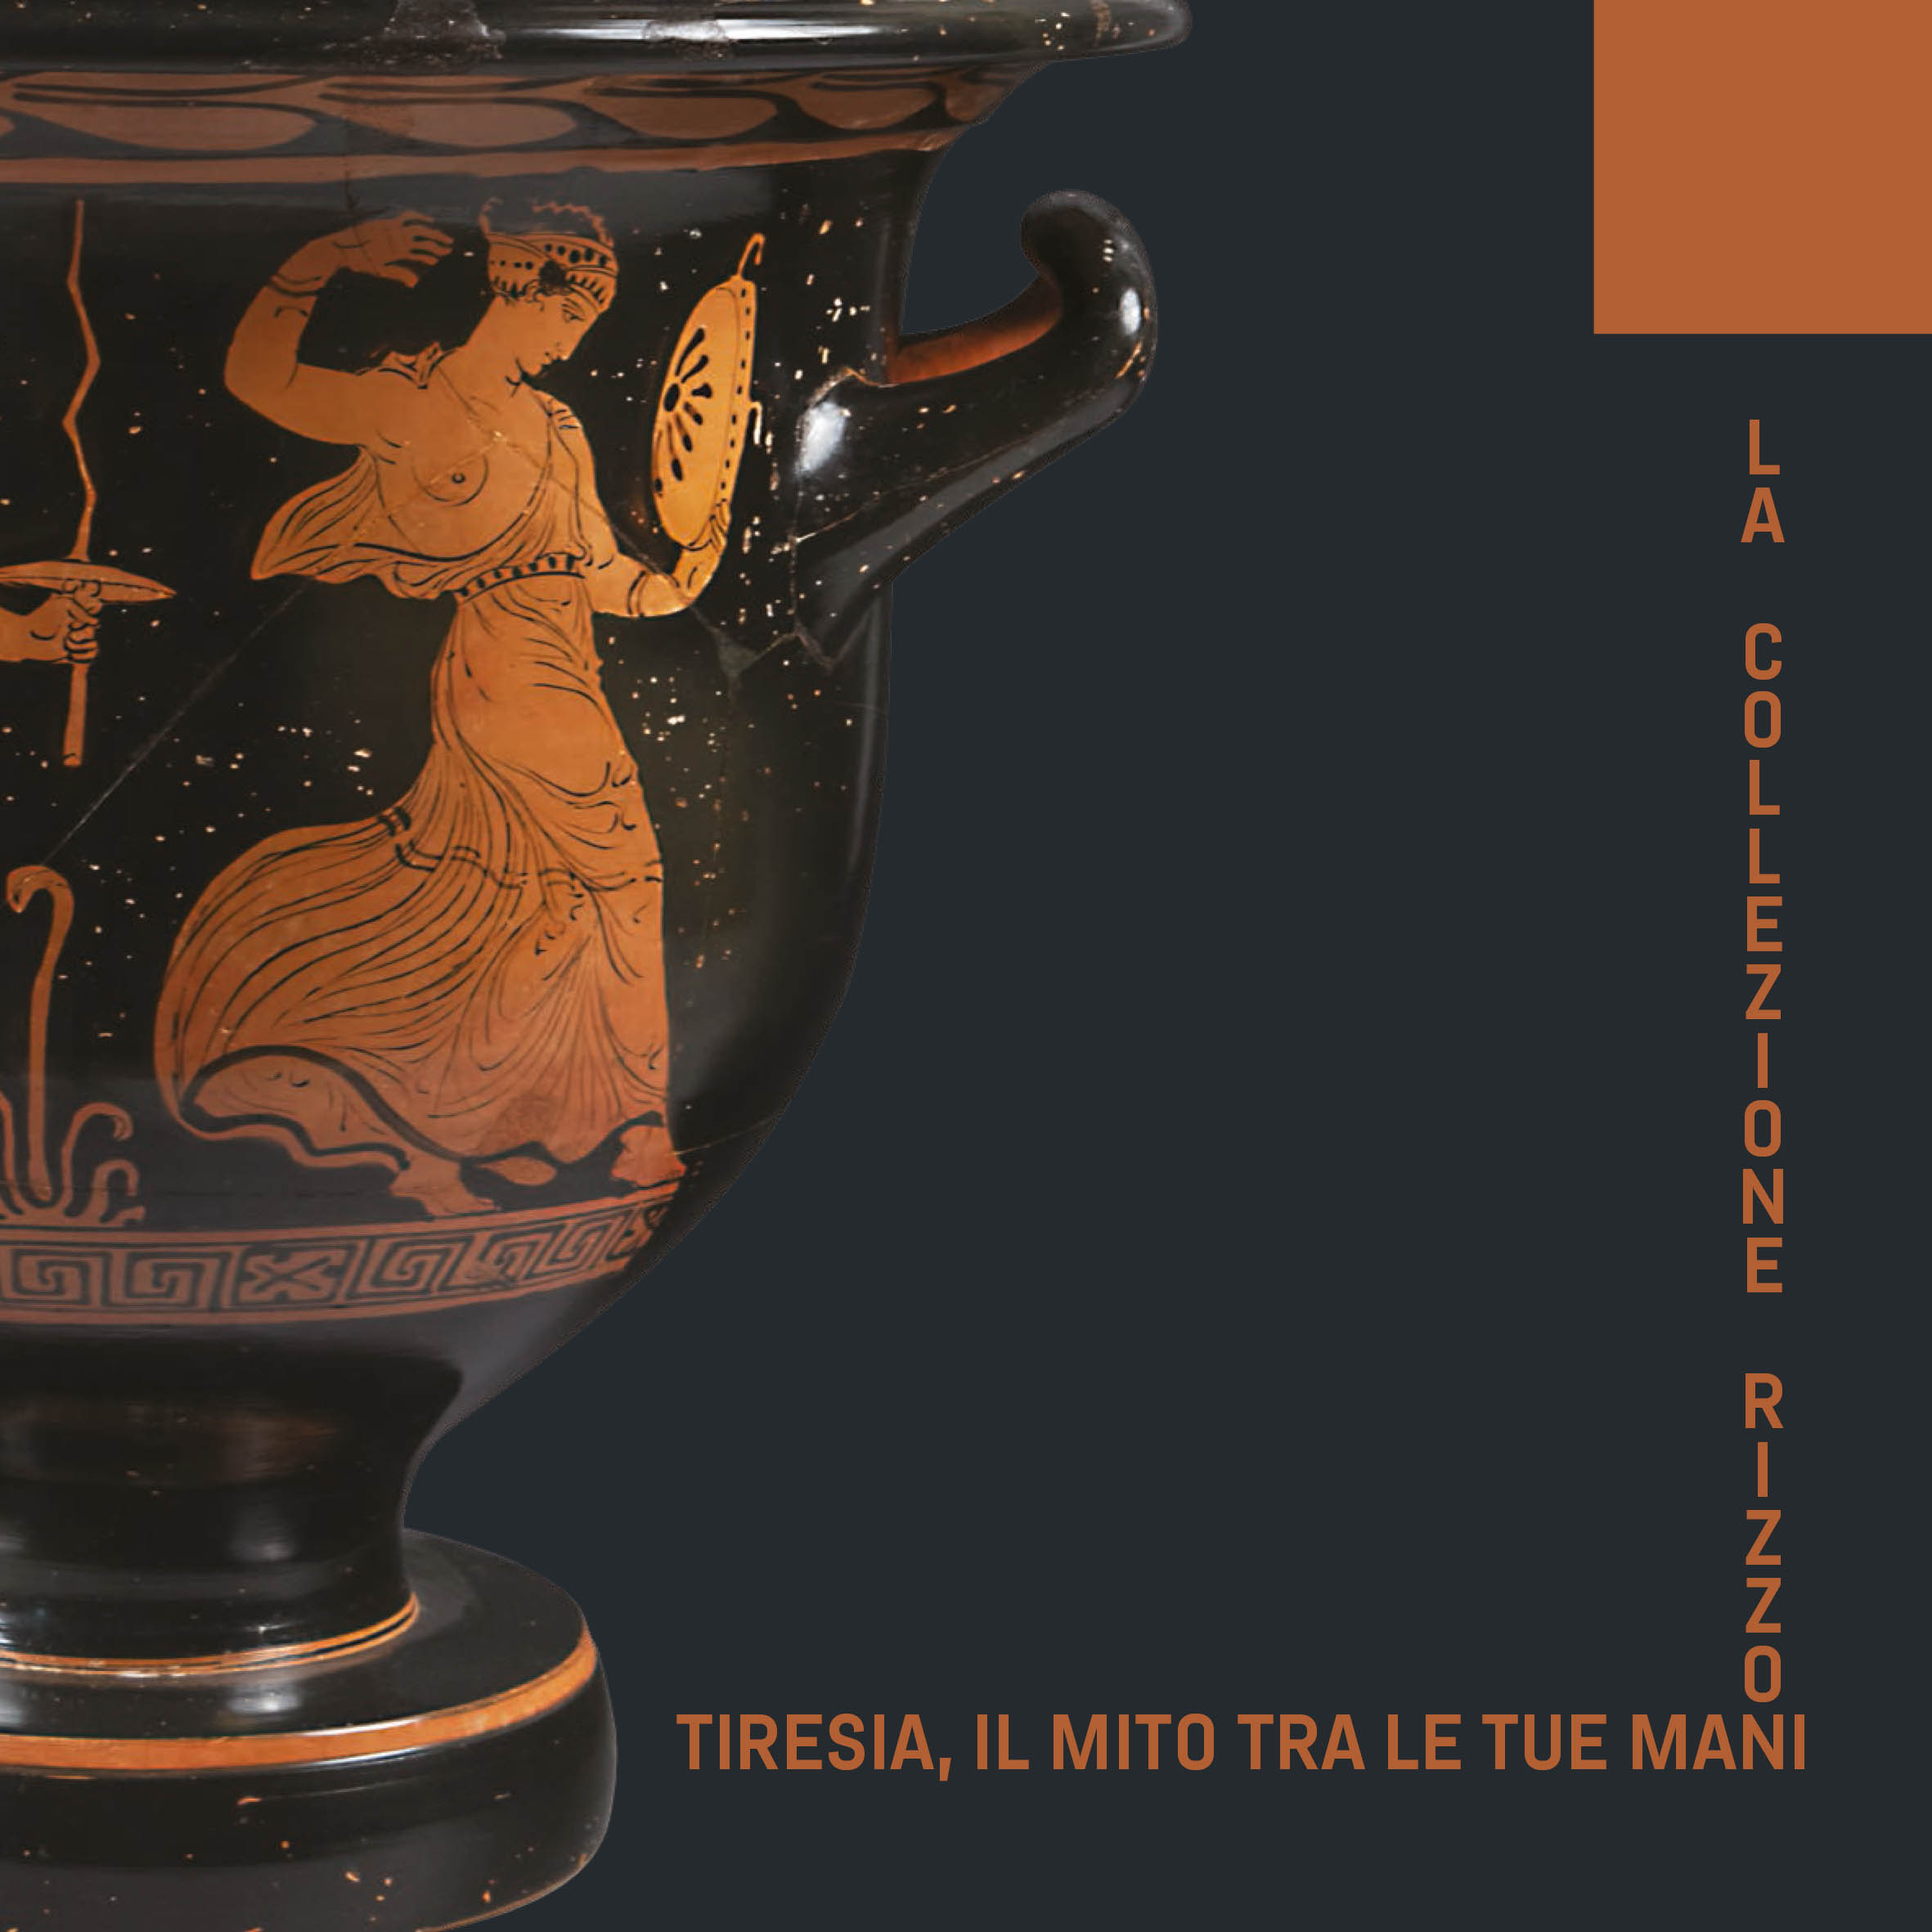 Tiresia, il mito tra le tue mani, Collezione Rizzon | Museo nazionale di Matera